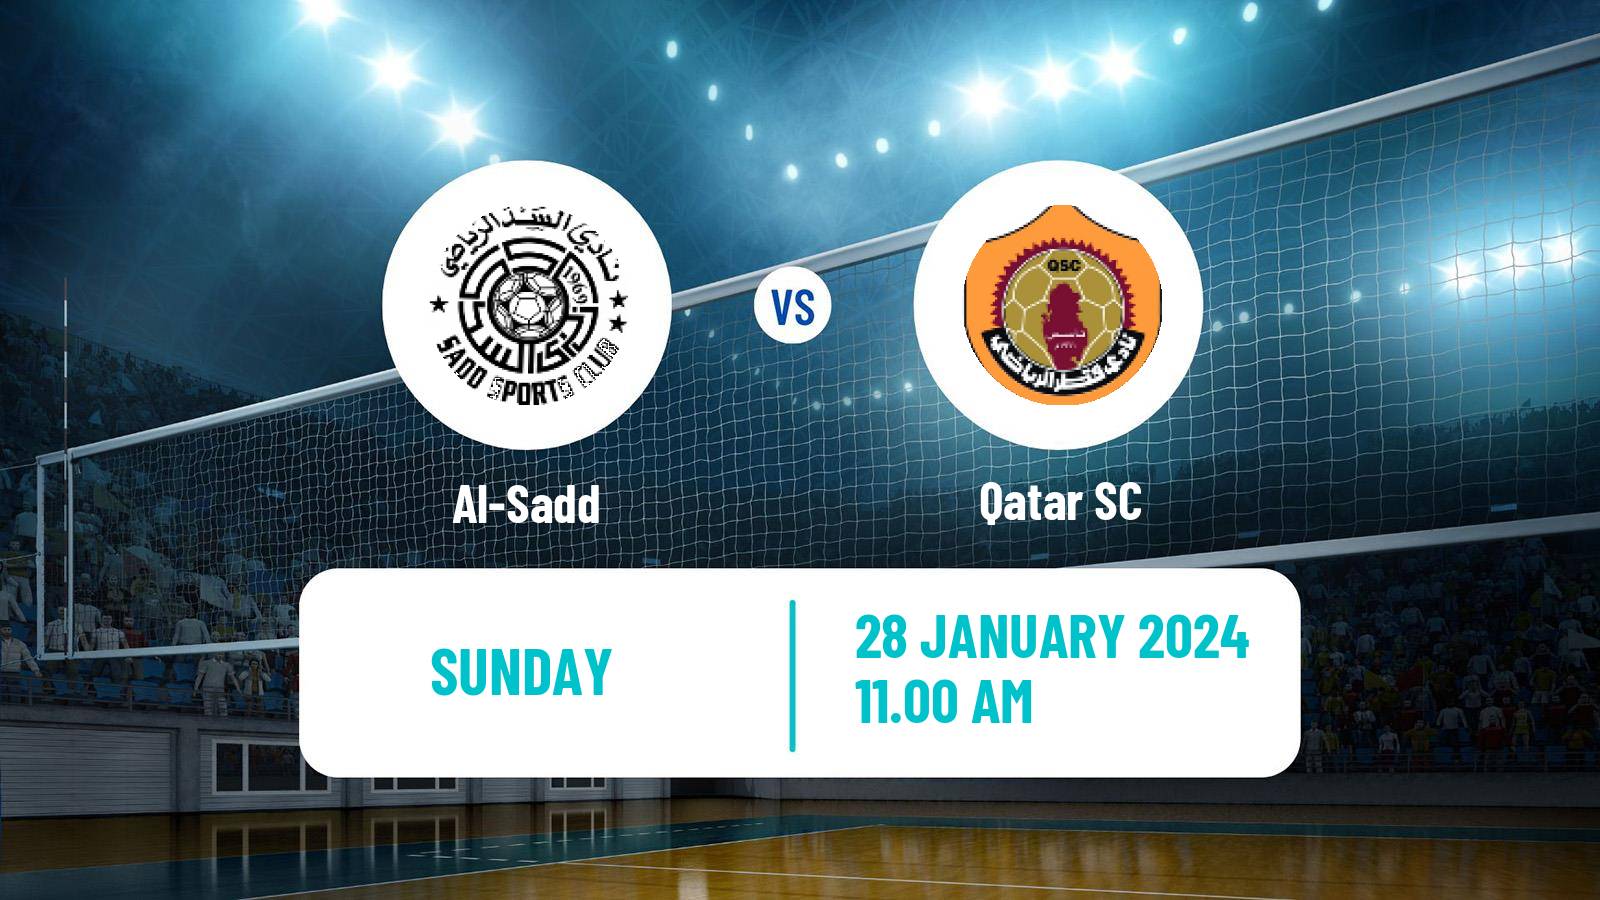 Volleyball Qatar Volleyball League Al-Sadd - Qatar SC